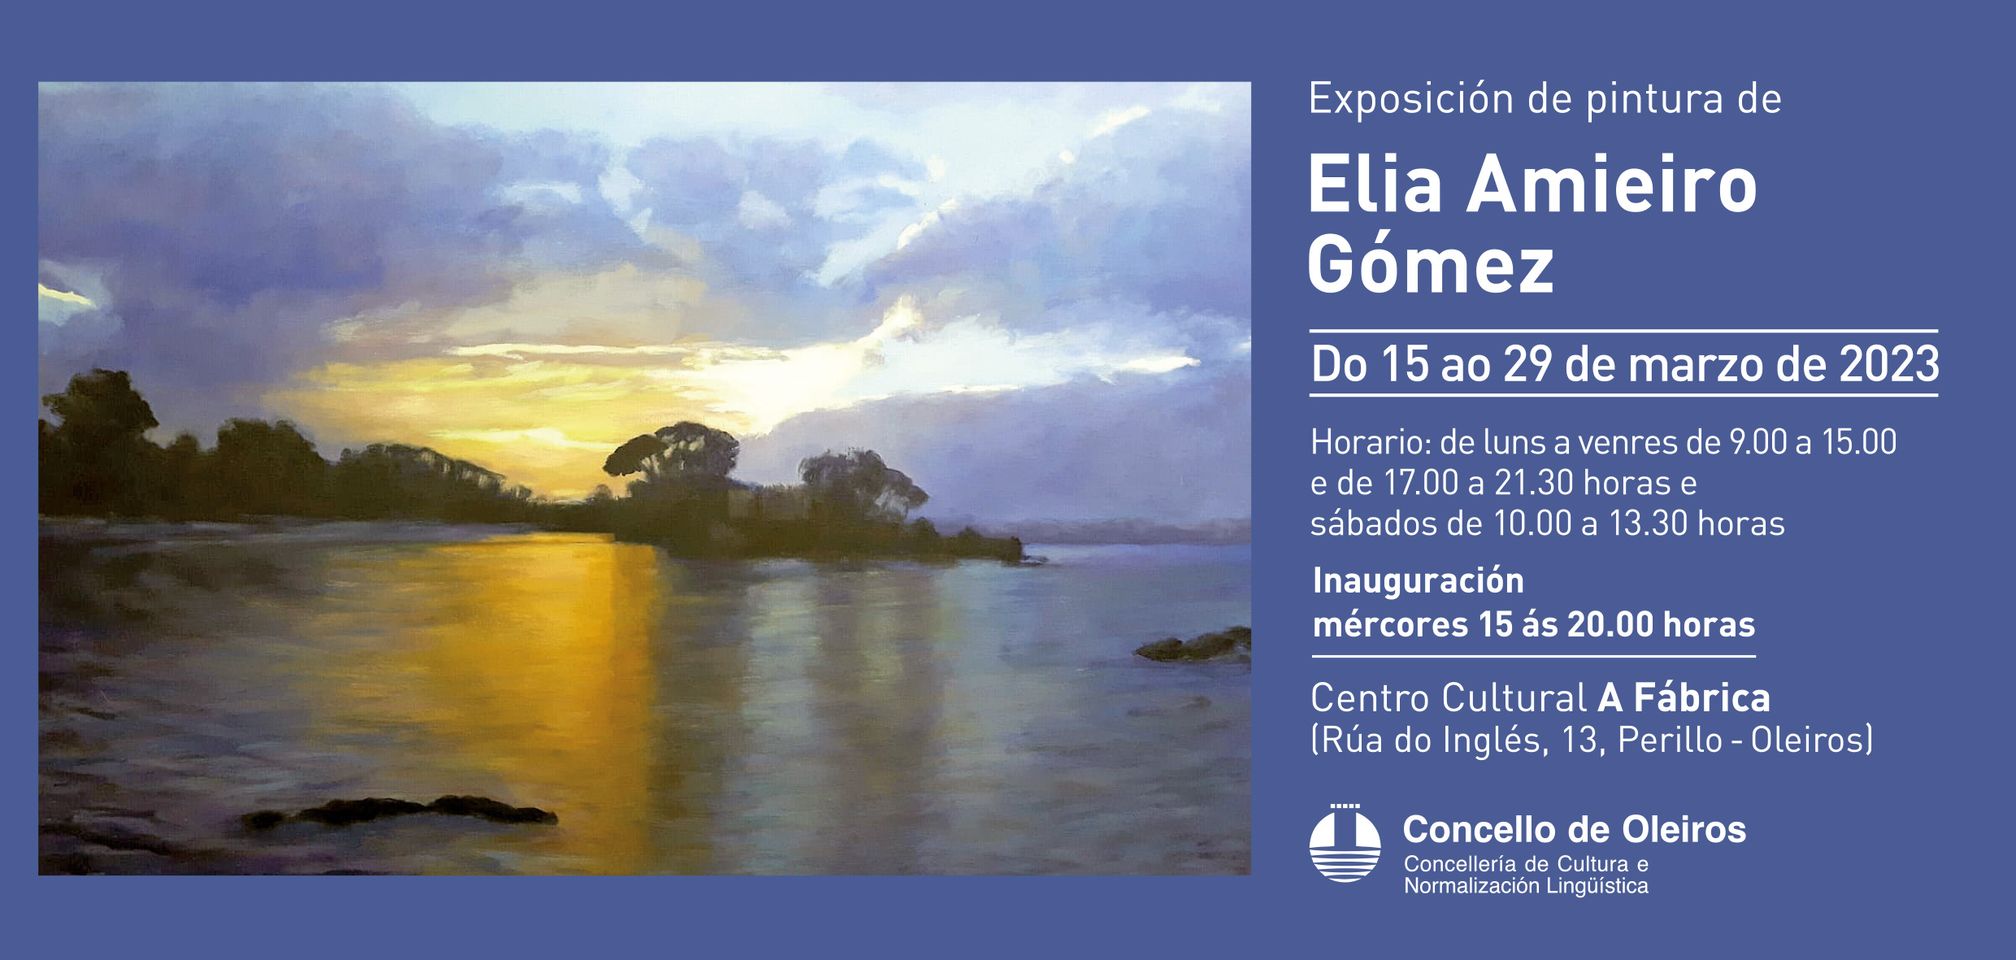 Exposición Pintura de Elia Amieiro Gómez